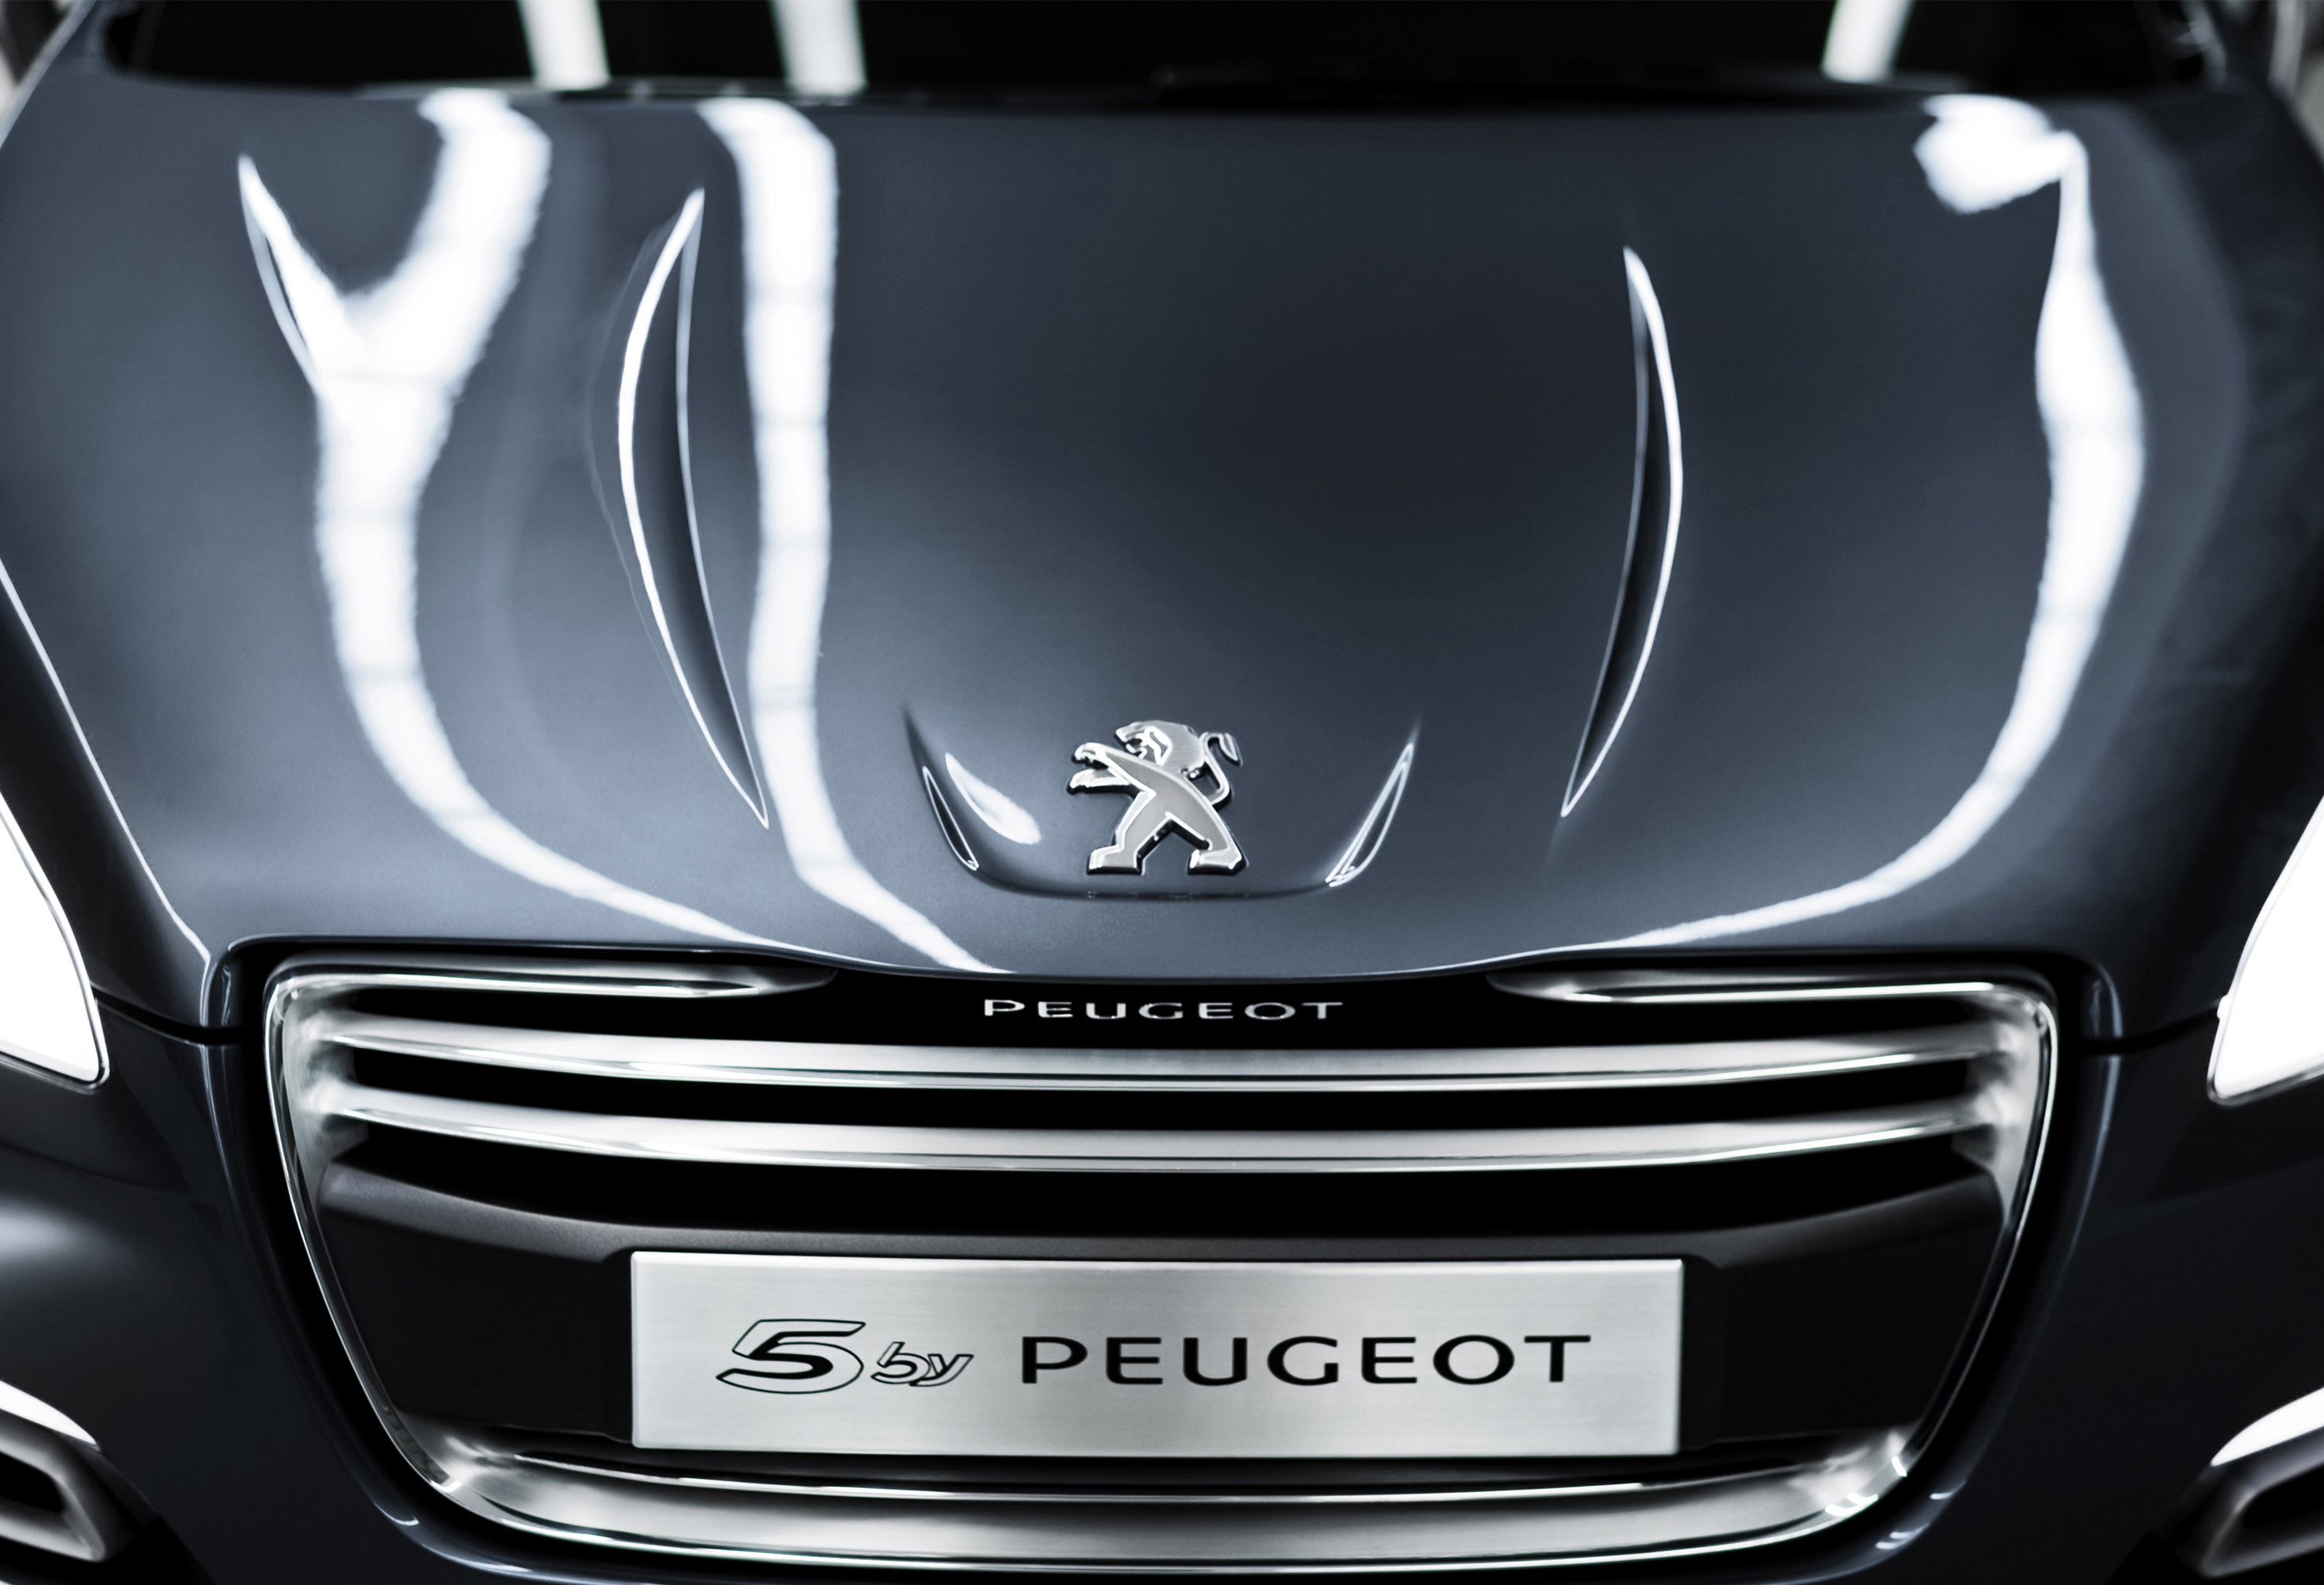 5 by Peugeot concept car